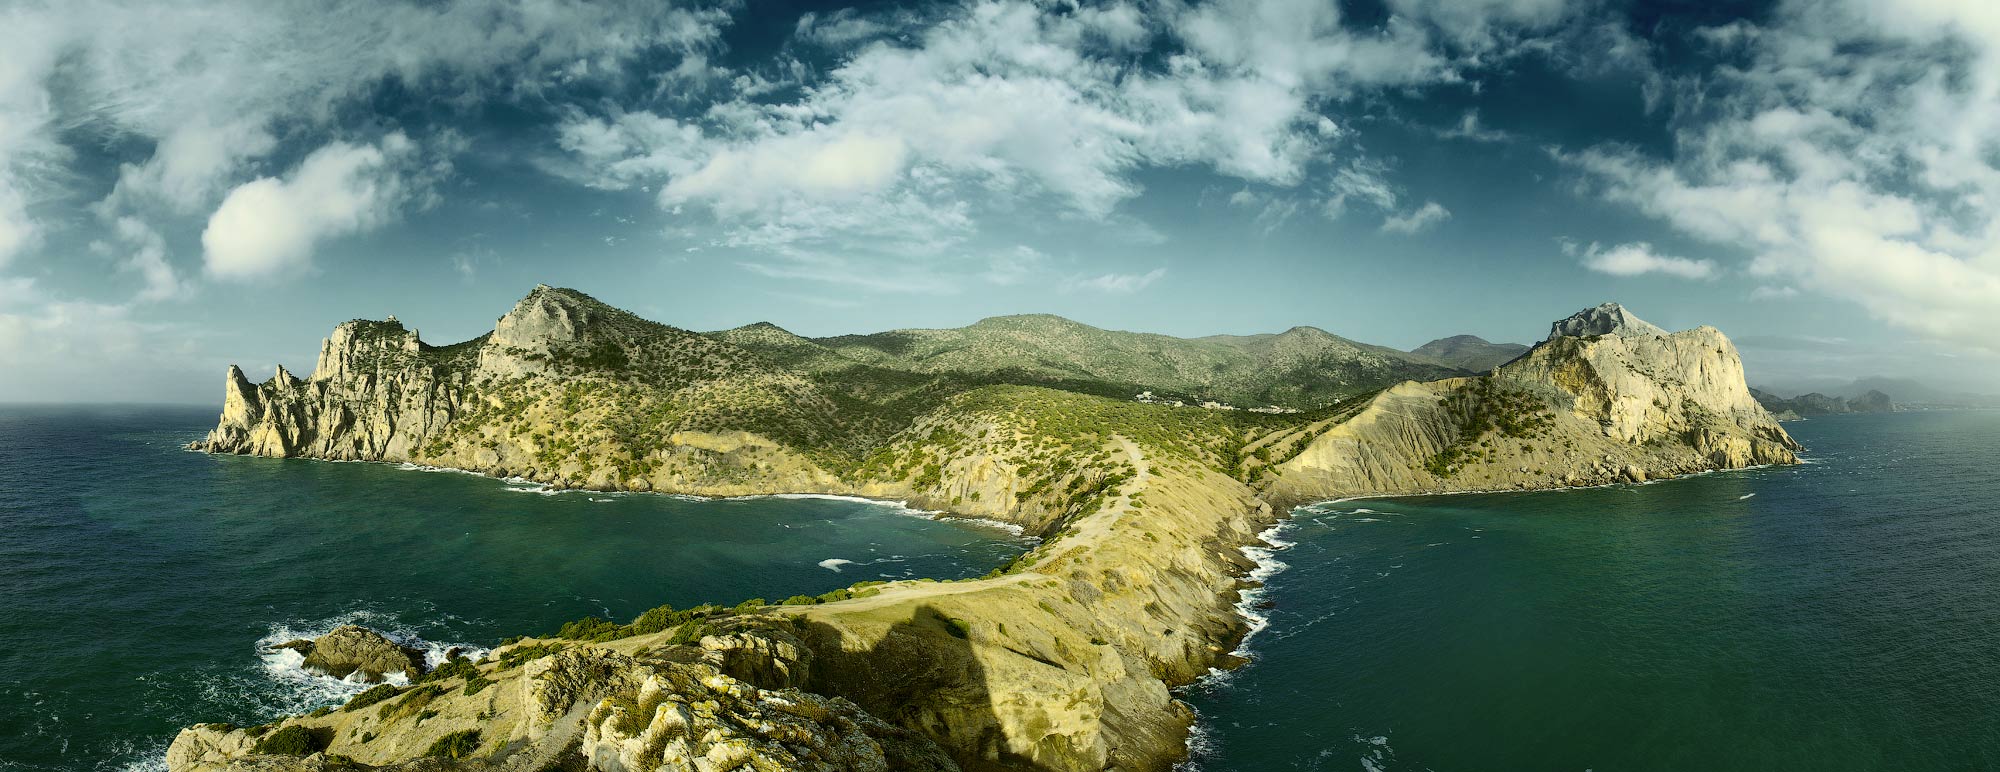 Полуостров Крыма красивое фото сверху